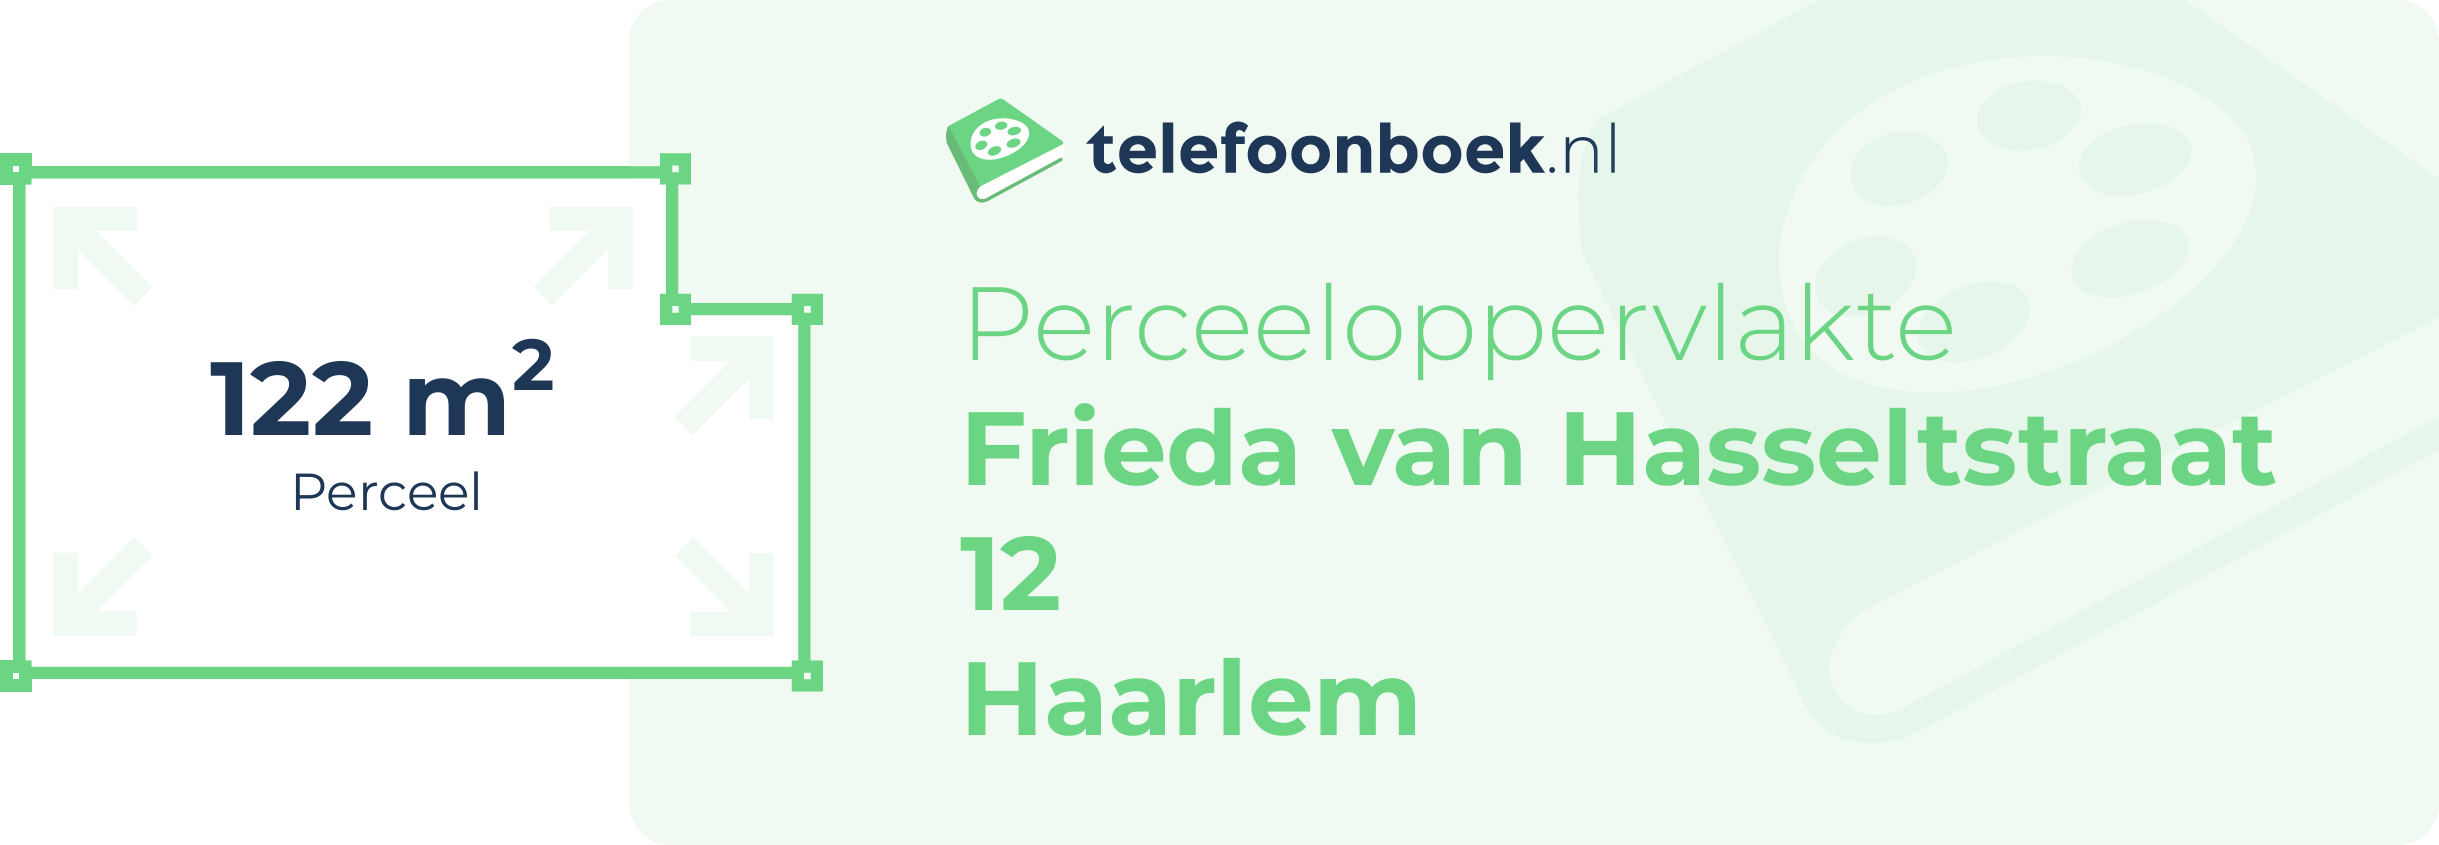 Perceeloppervlakte Frieda Van Hasseltstraat 12 Haarlem